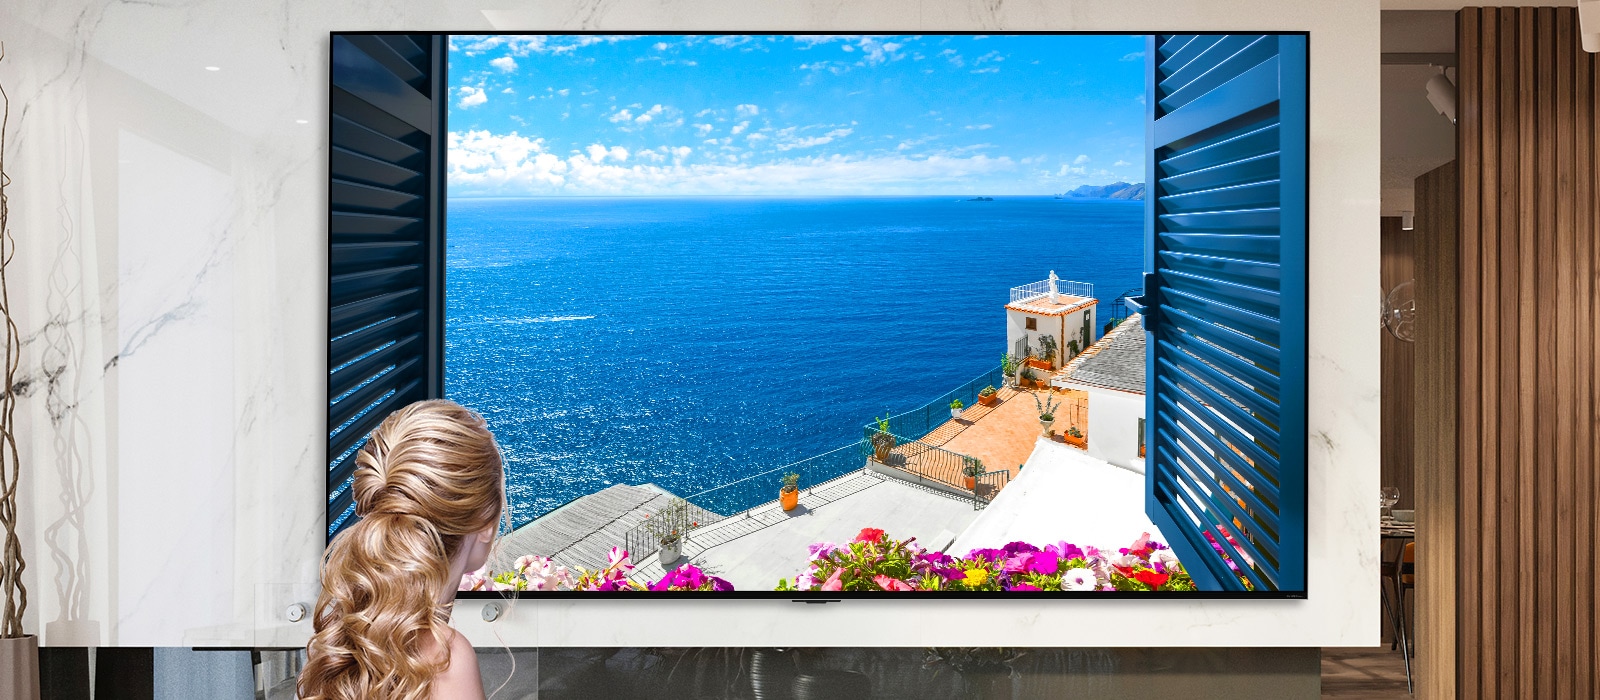 Plan arrière d’une femme qui contemple un océan bleu et des bâtiments blancs par une fenêtre. L’image s’éloigne à mesure que la page défile pour afficher la pièce et dévoiler le fait que la fenêtre est un téléviseur Mini LED QNED de LG.